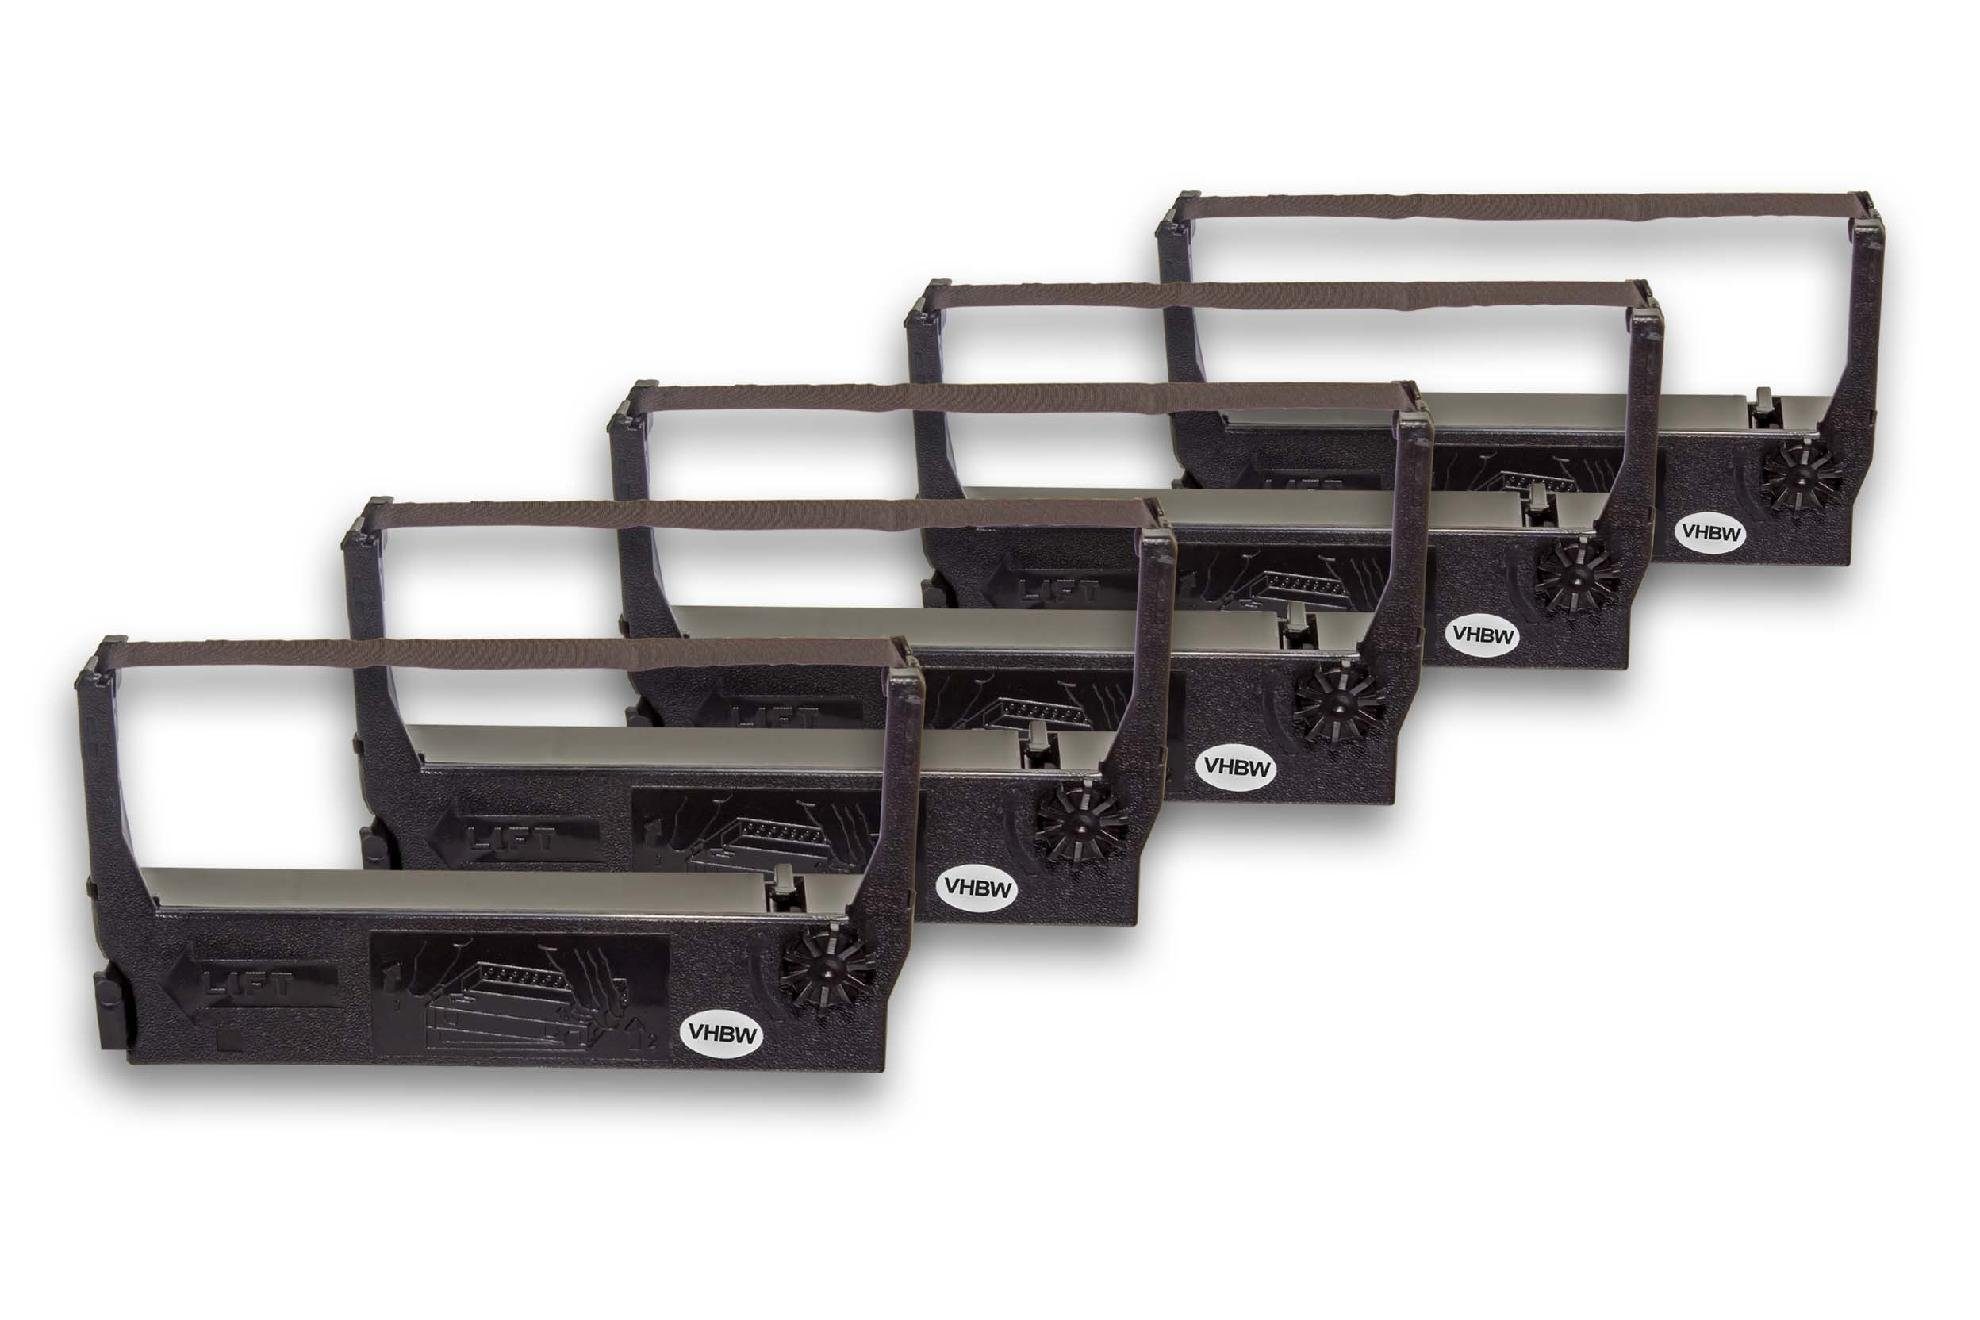 Drucker & vhbw SU Sumitronics 1000 für Nadeldrucker passend Kopierer Beschriftungsband,